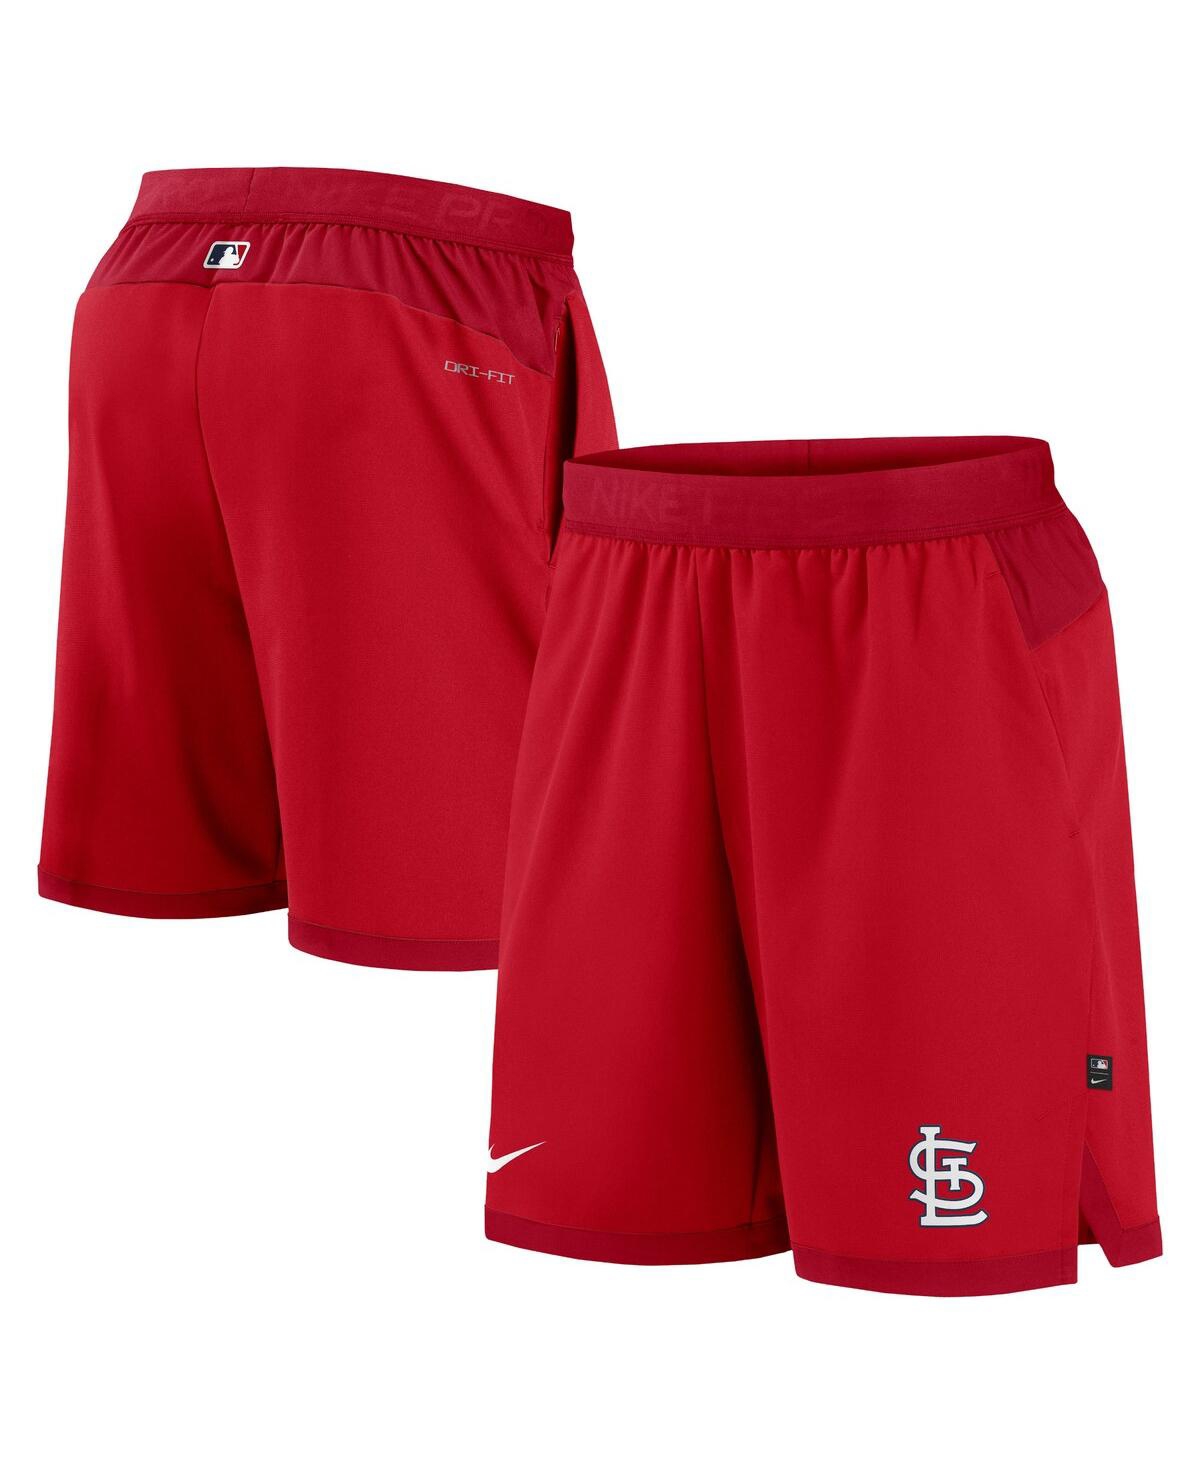 Shop Nike Men's  Red St. Louis Cardinals Authentic Collection Flex Vent Performance Shorts